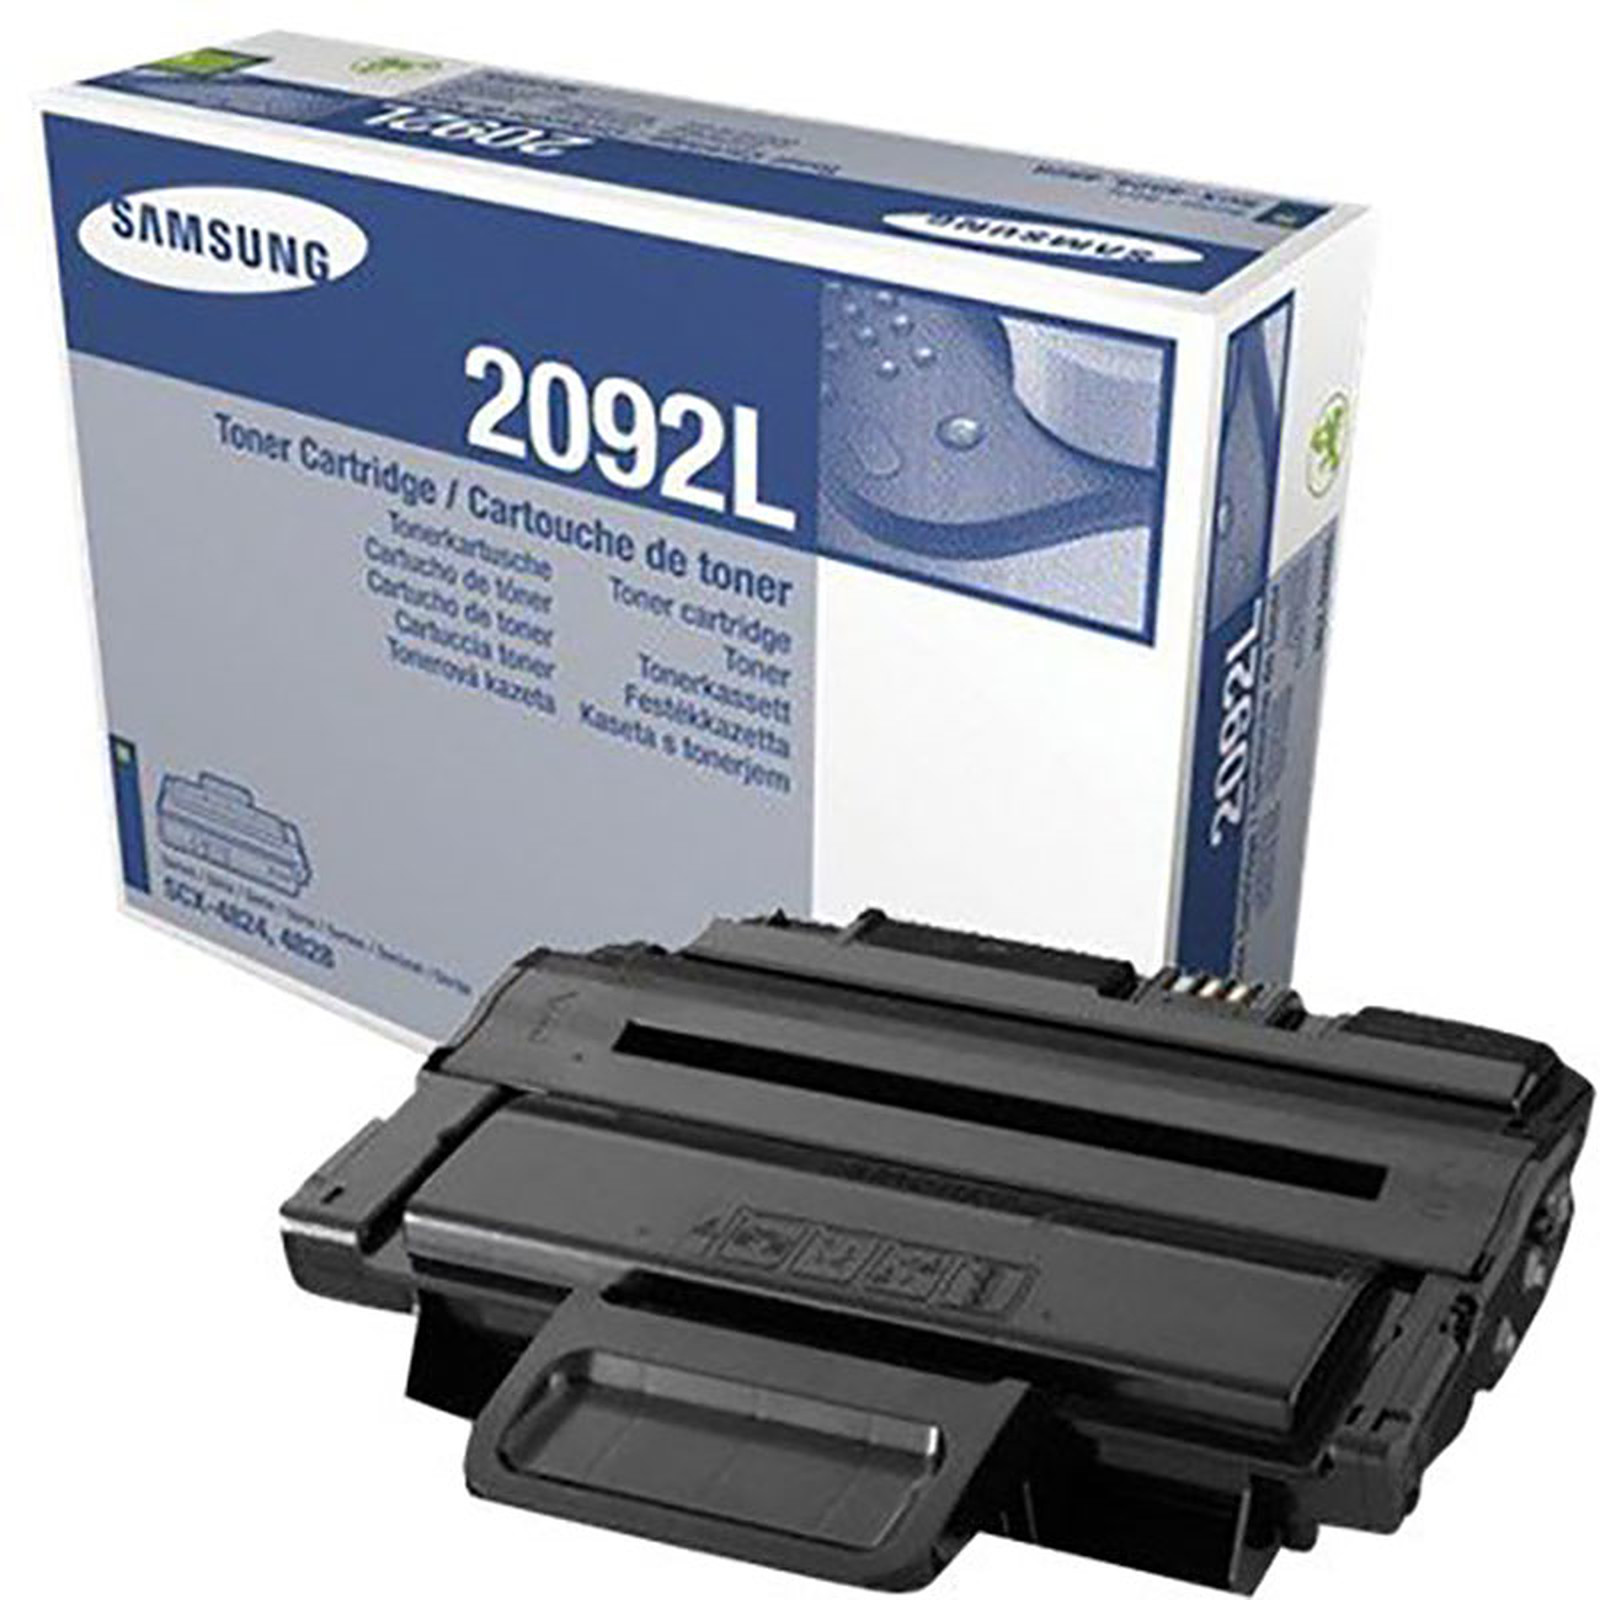 Samsung MLT-D2092L - Toner imprimante Samsung